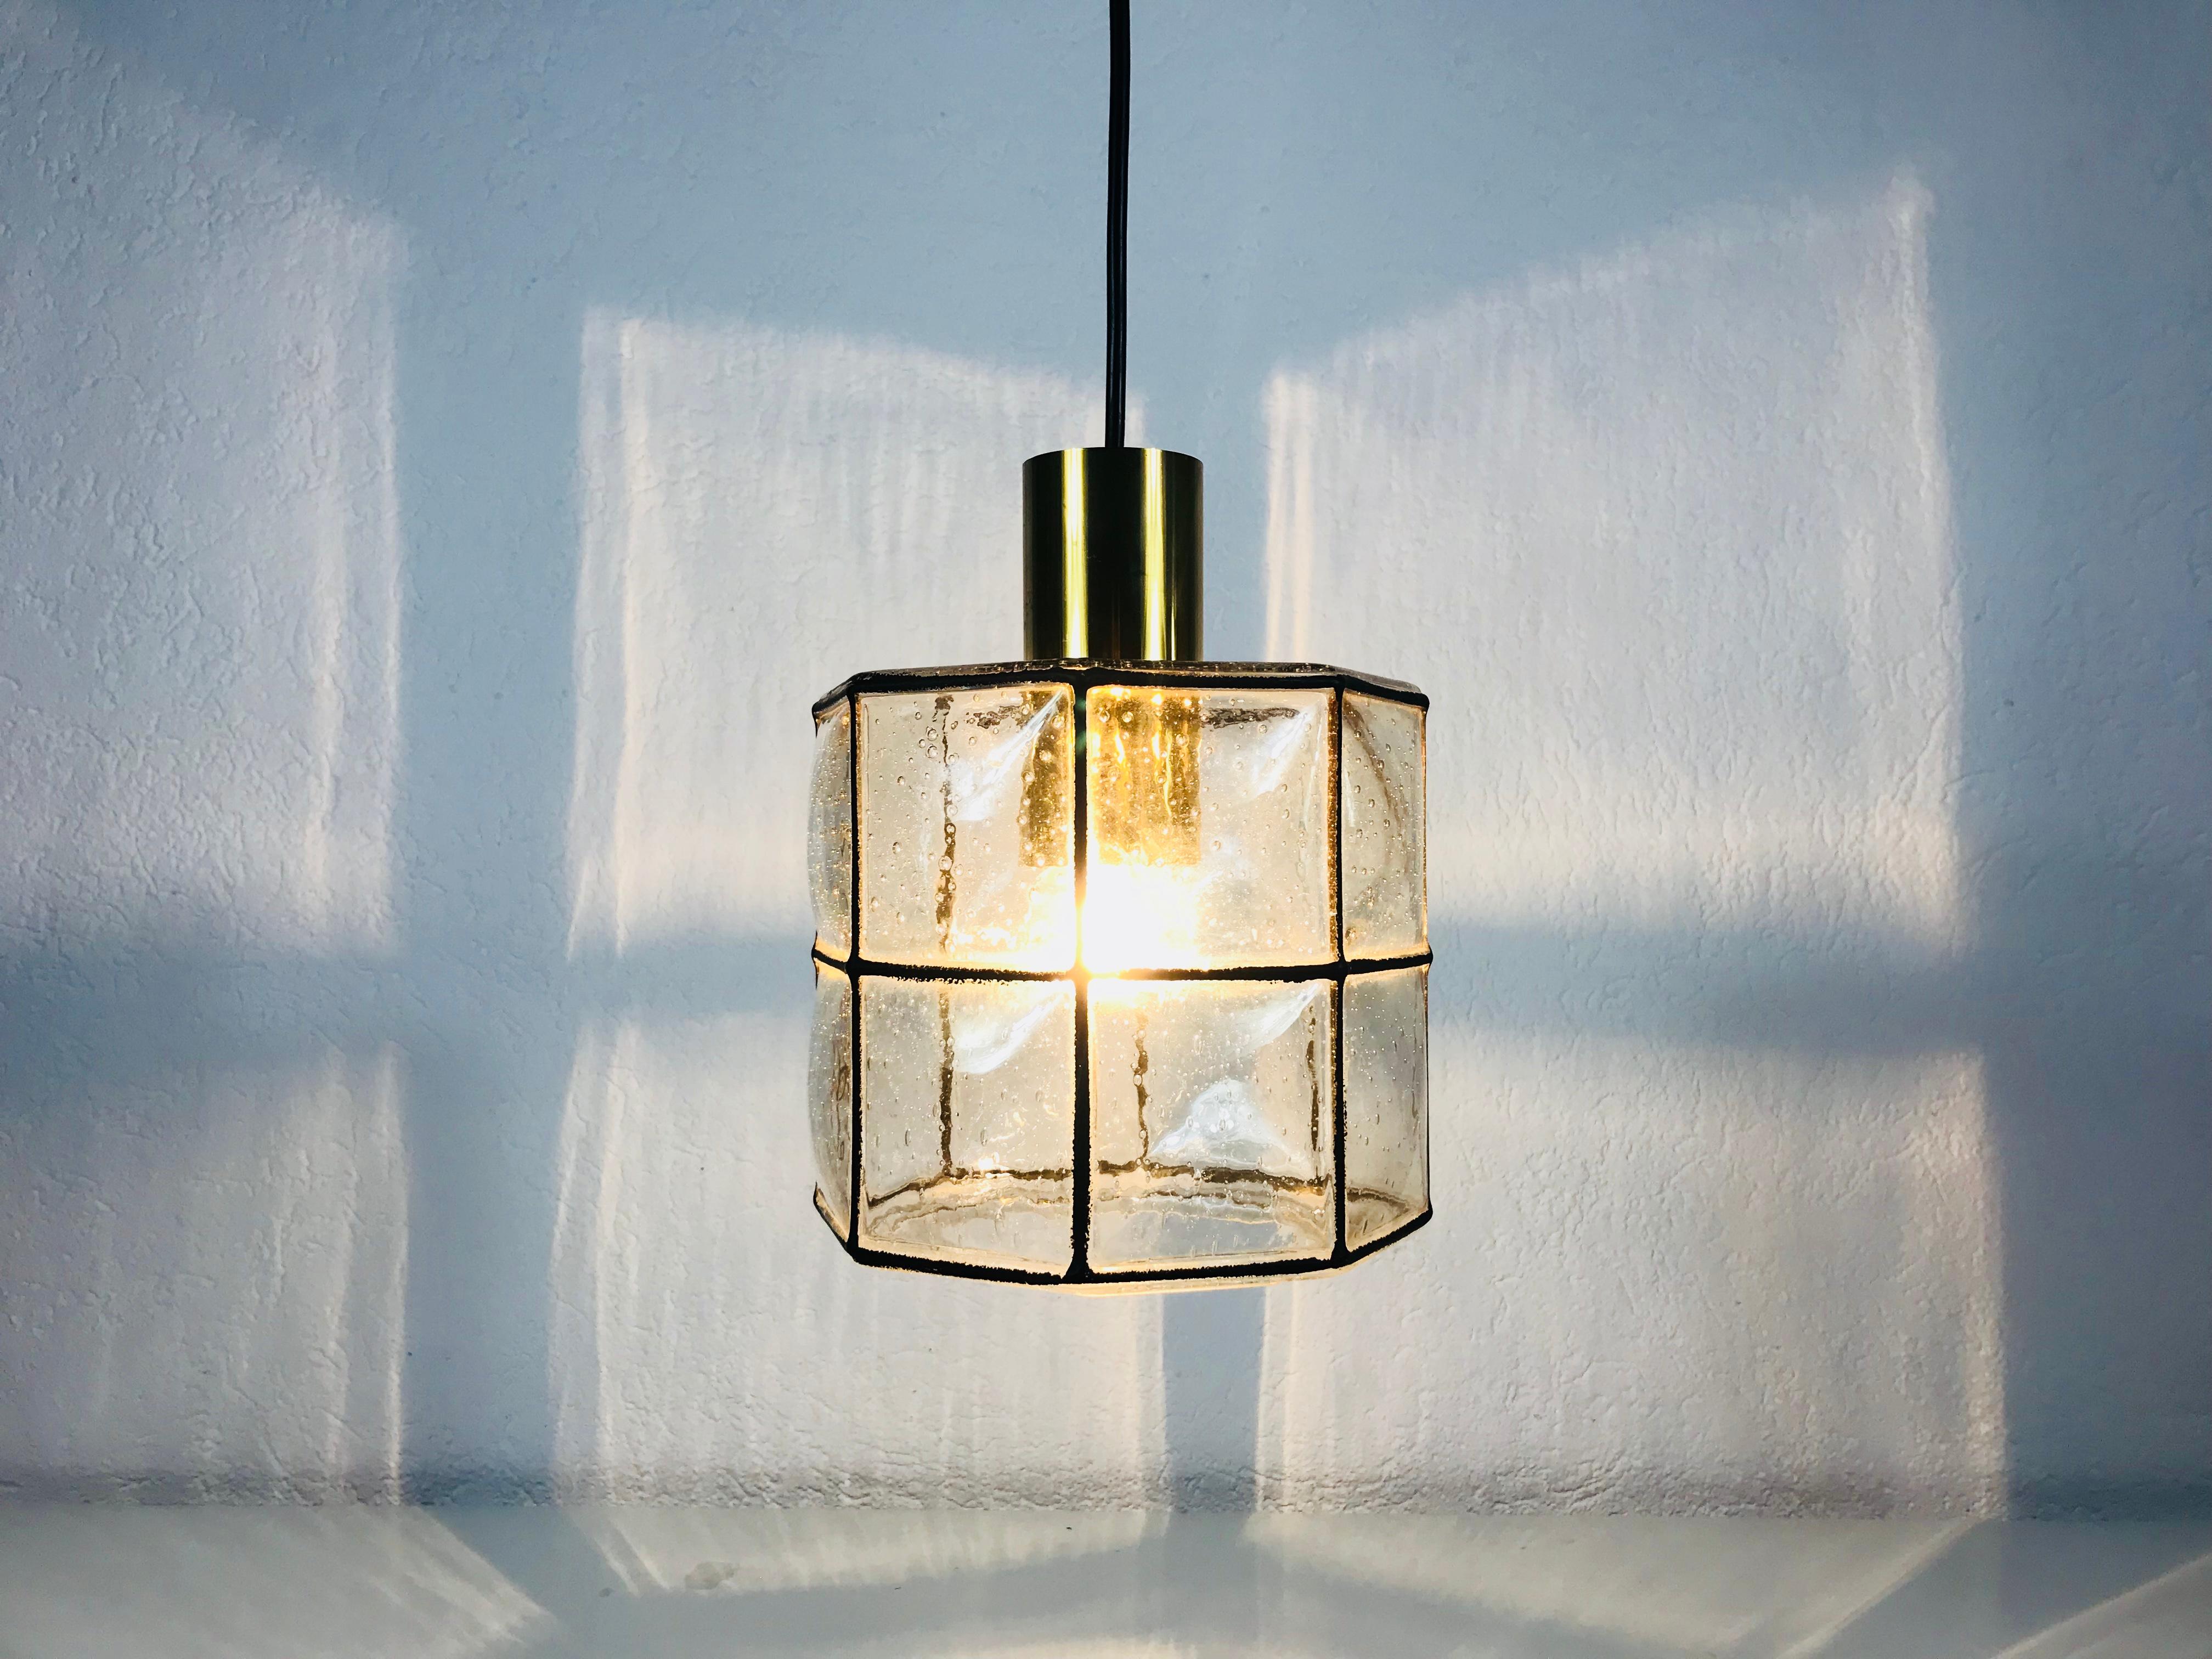 Eine Mid-Century Modern Pendelleuchte von Glashütte Limburg aus den 1960er Jahren in Deutschland. Sie fasziniert mit ihrer schönen quadratischen Form und dem Blasenglas. Die Leuchte hat ein sehr schönes, minimalistisches Design.

Die Leuchte